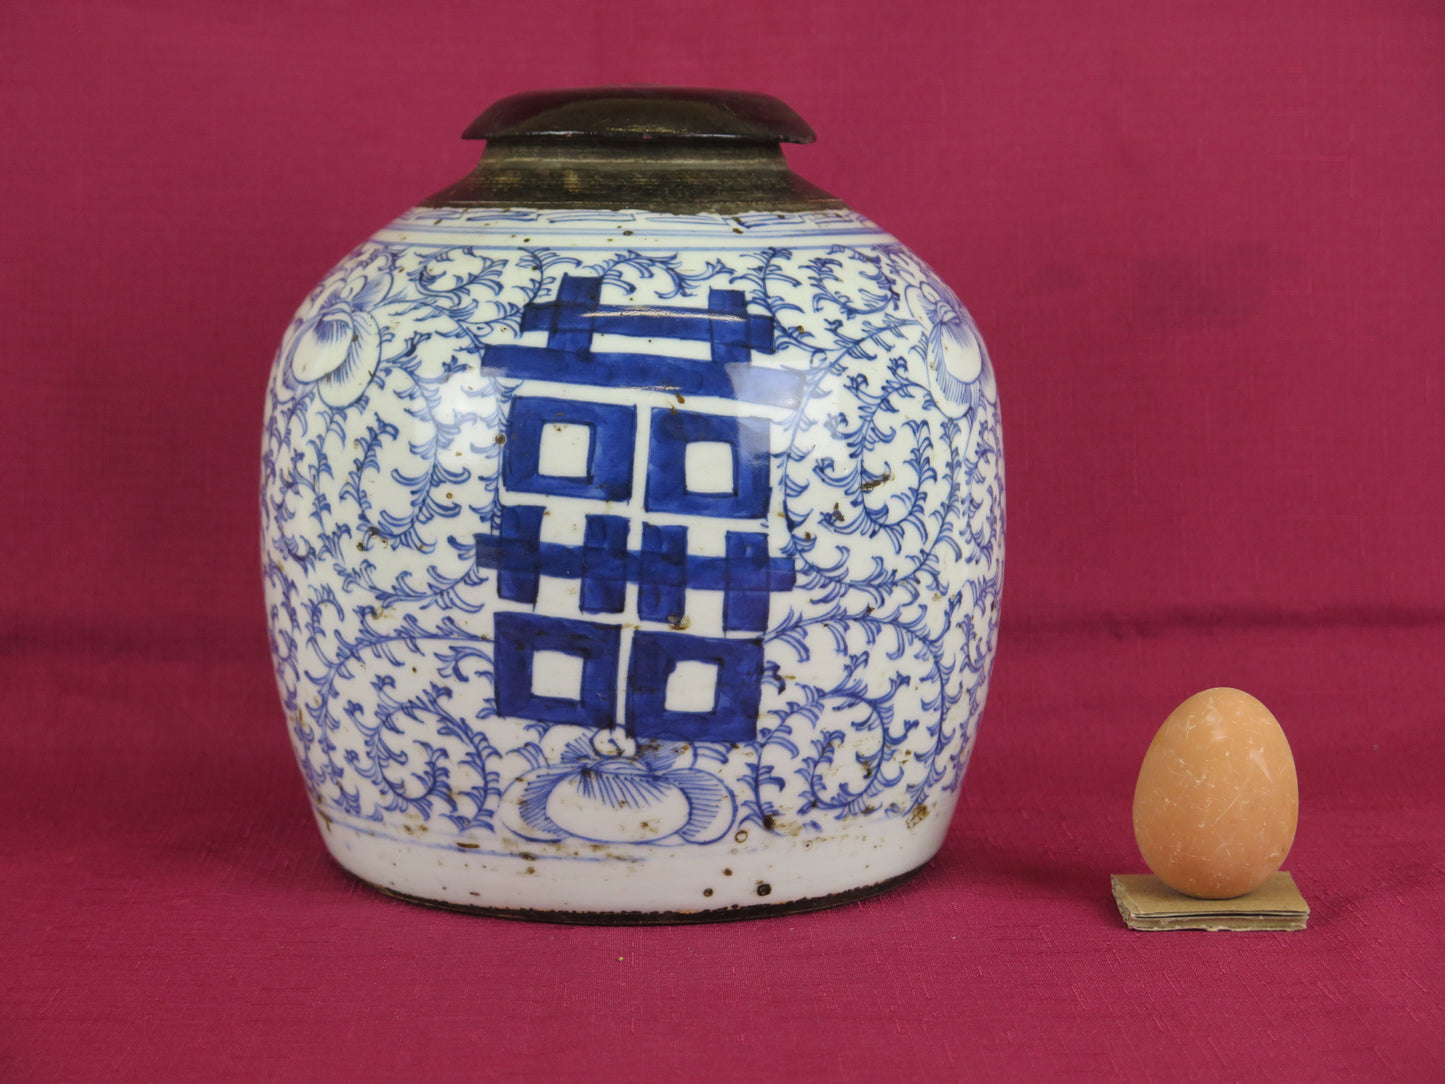 Vaso antico cina ceramica bianco blu collezione felicita' cinese matrimonio Cina CM2